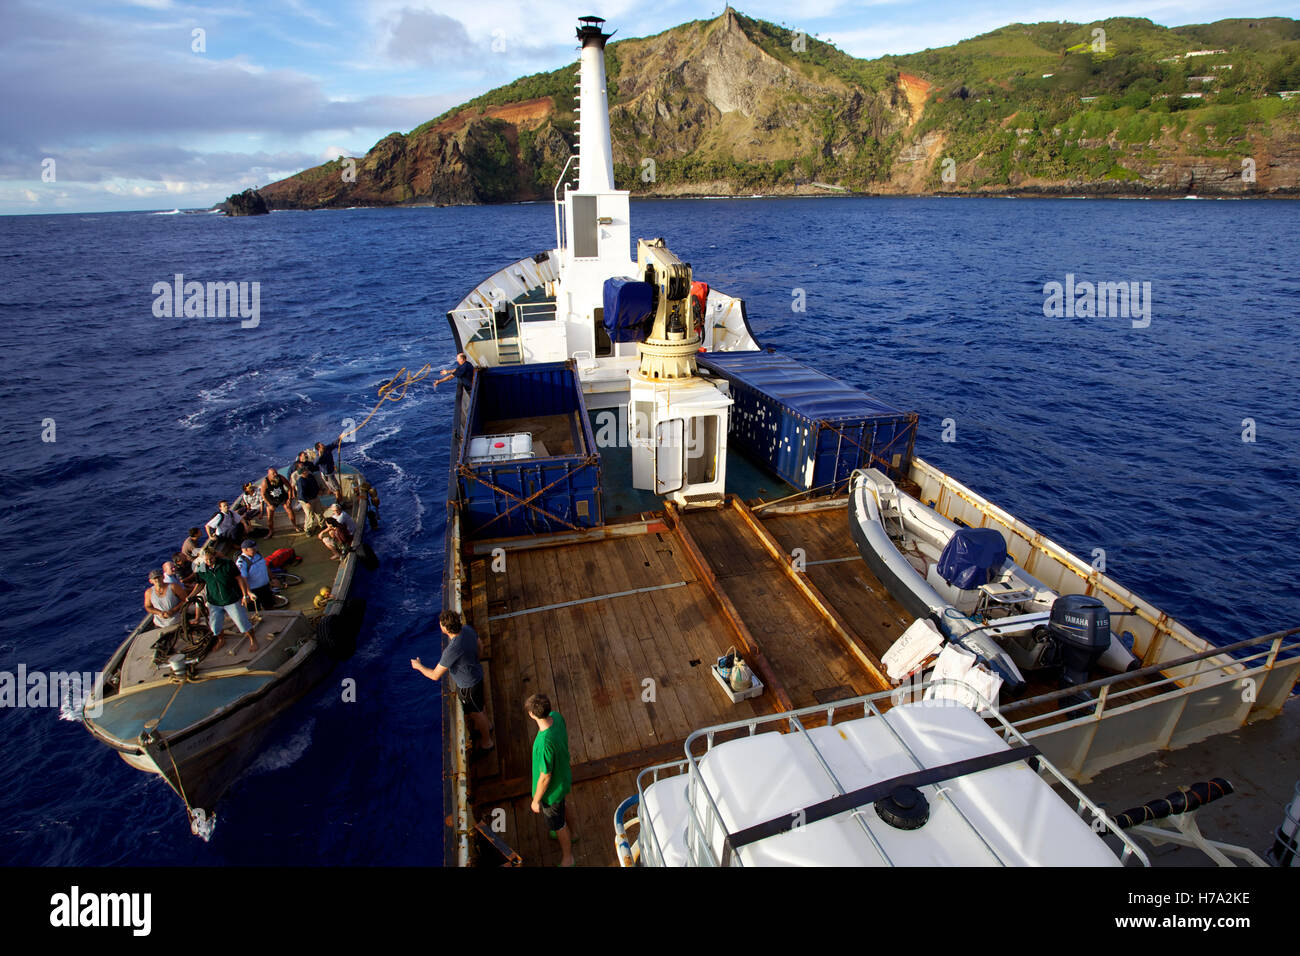 Pitcairn, Söhne von Meuterern! -31/05/2012 - Pitcairn / Pitcairn - Menschen, die Einschiffung auf die Claymore II verlassen Pitcairn Insel - Olivier Goujon / Le Pictorium Stockfoto